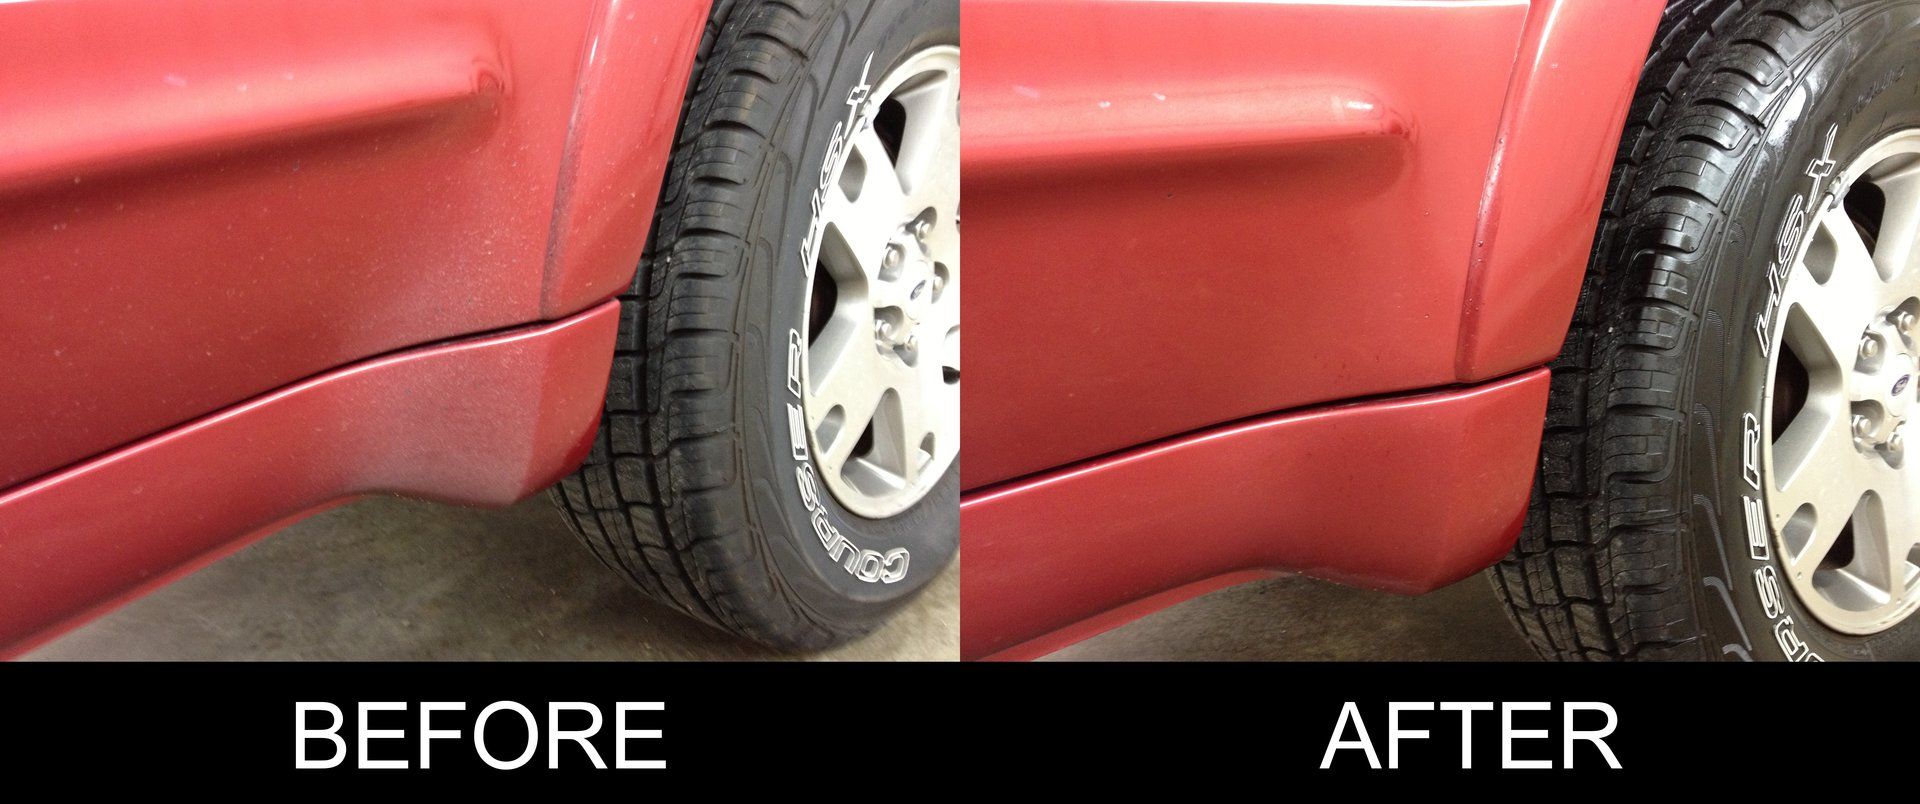 Car restoration - Before/After